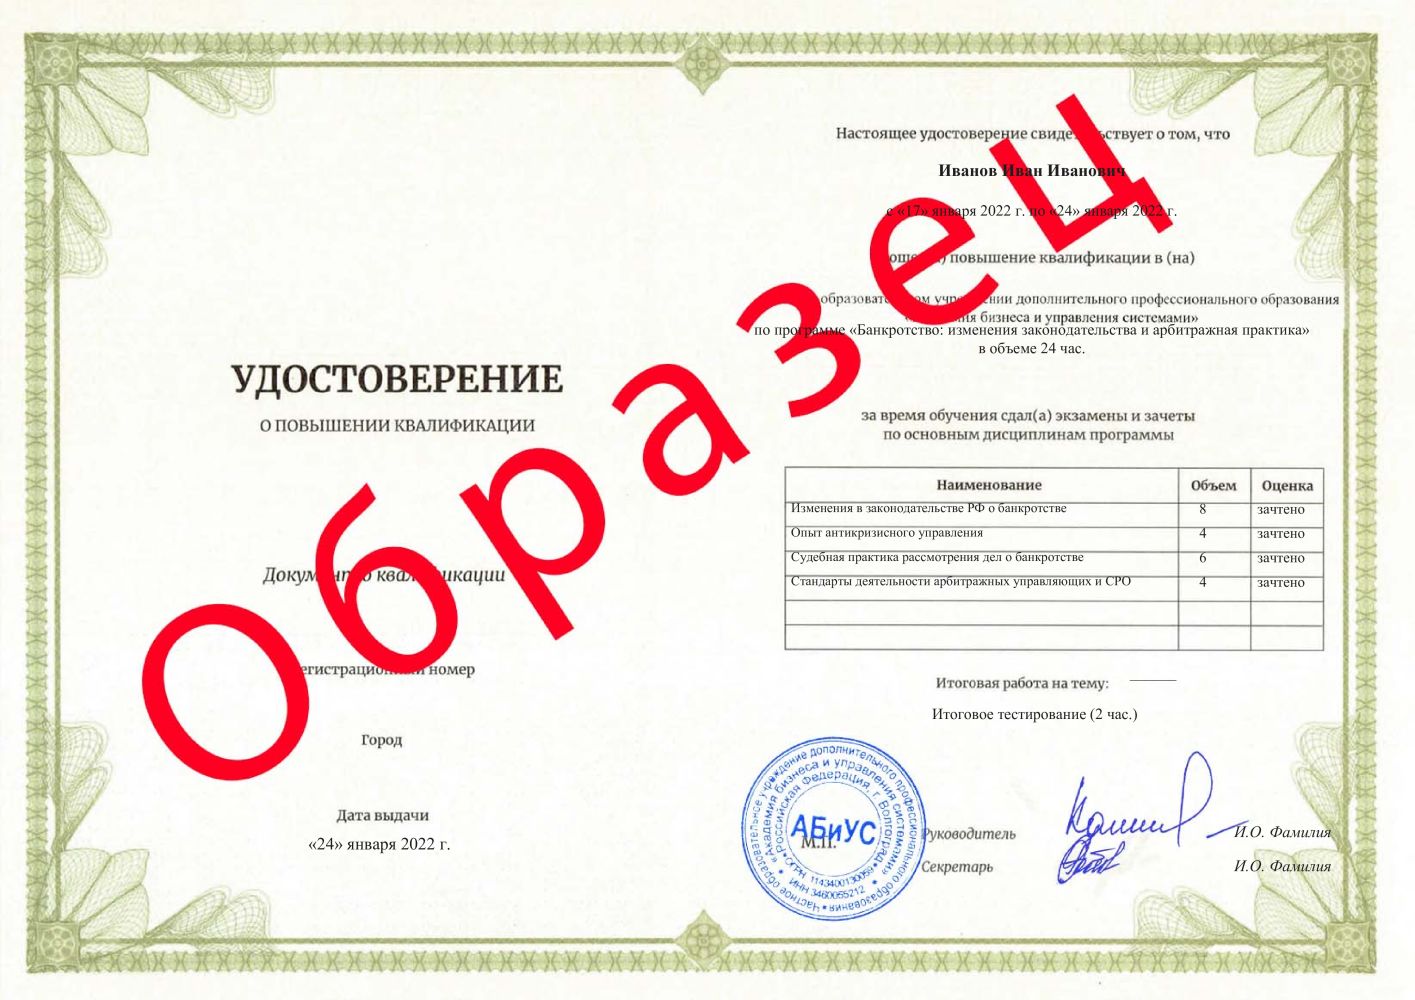 Удостоверение Банкротство: изменения законодательства и арбитражная практика 24 часа 6800 руб.